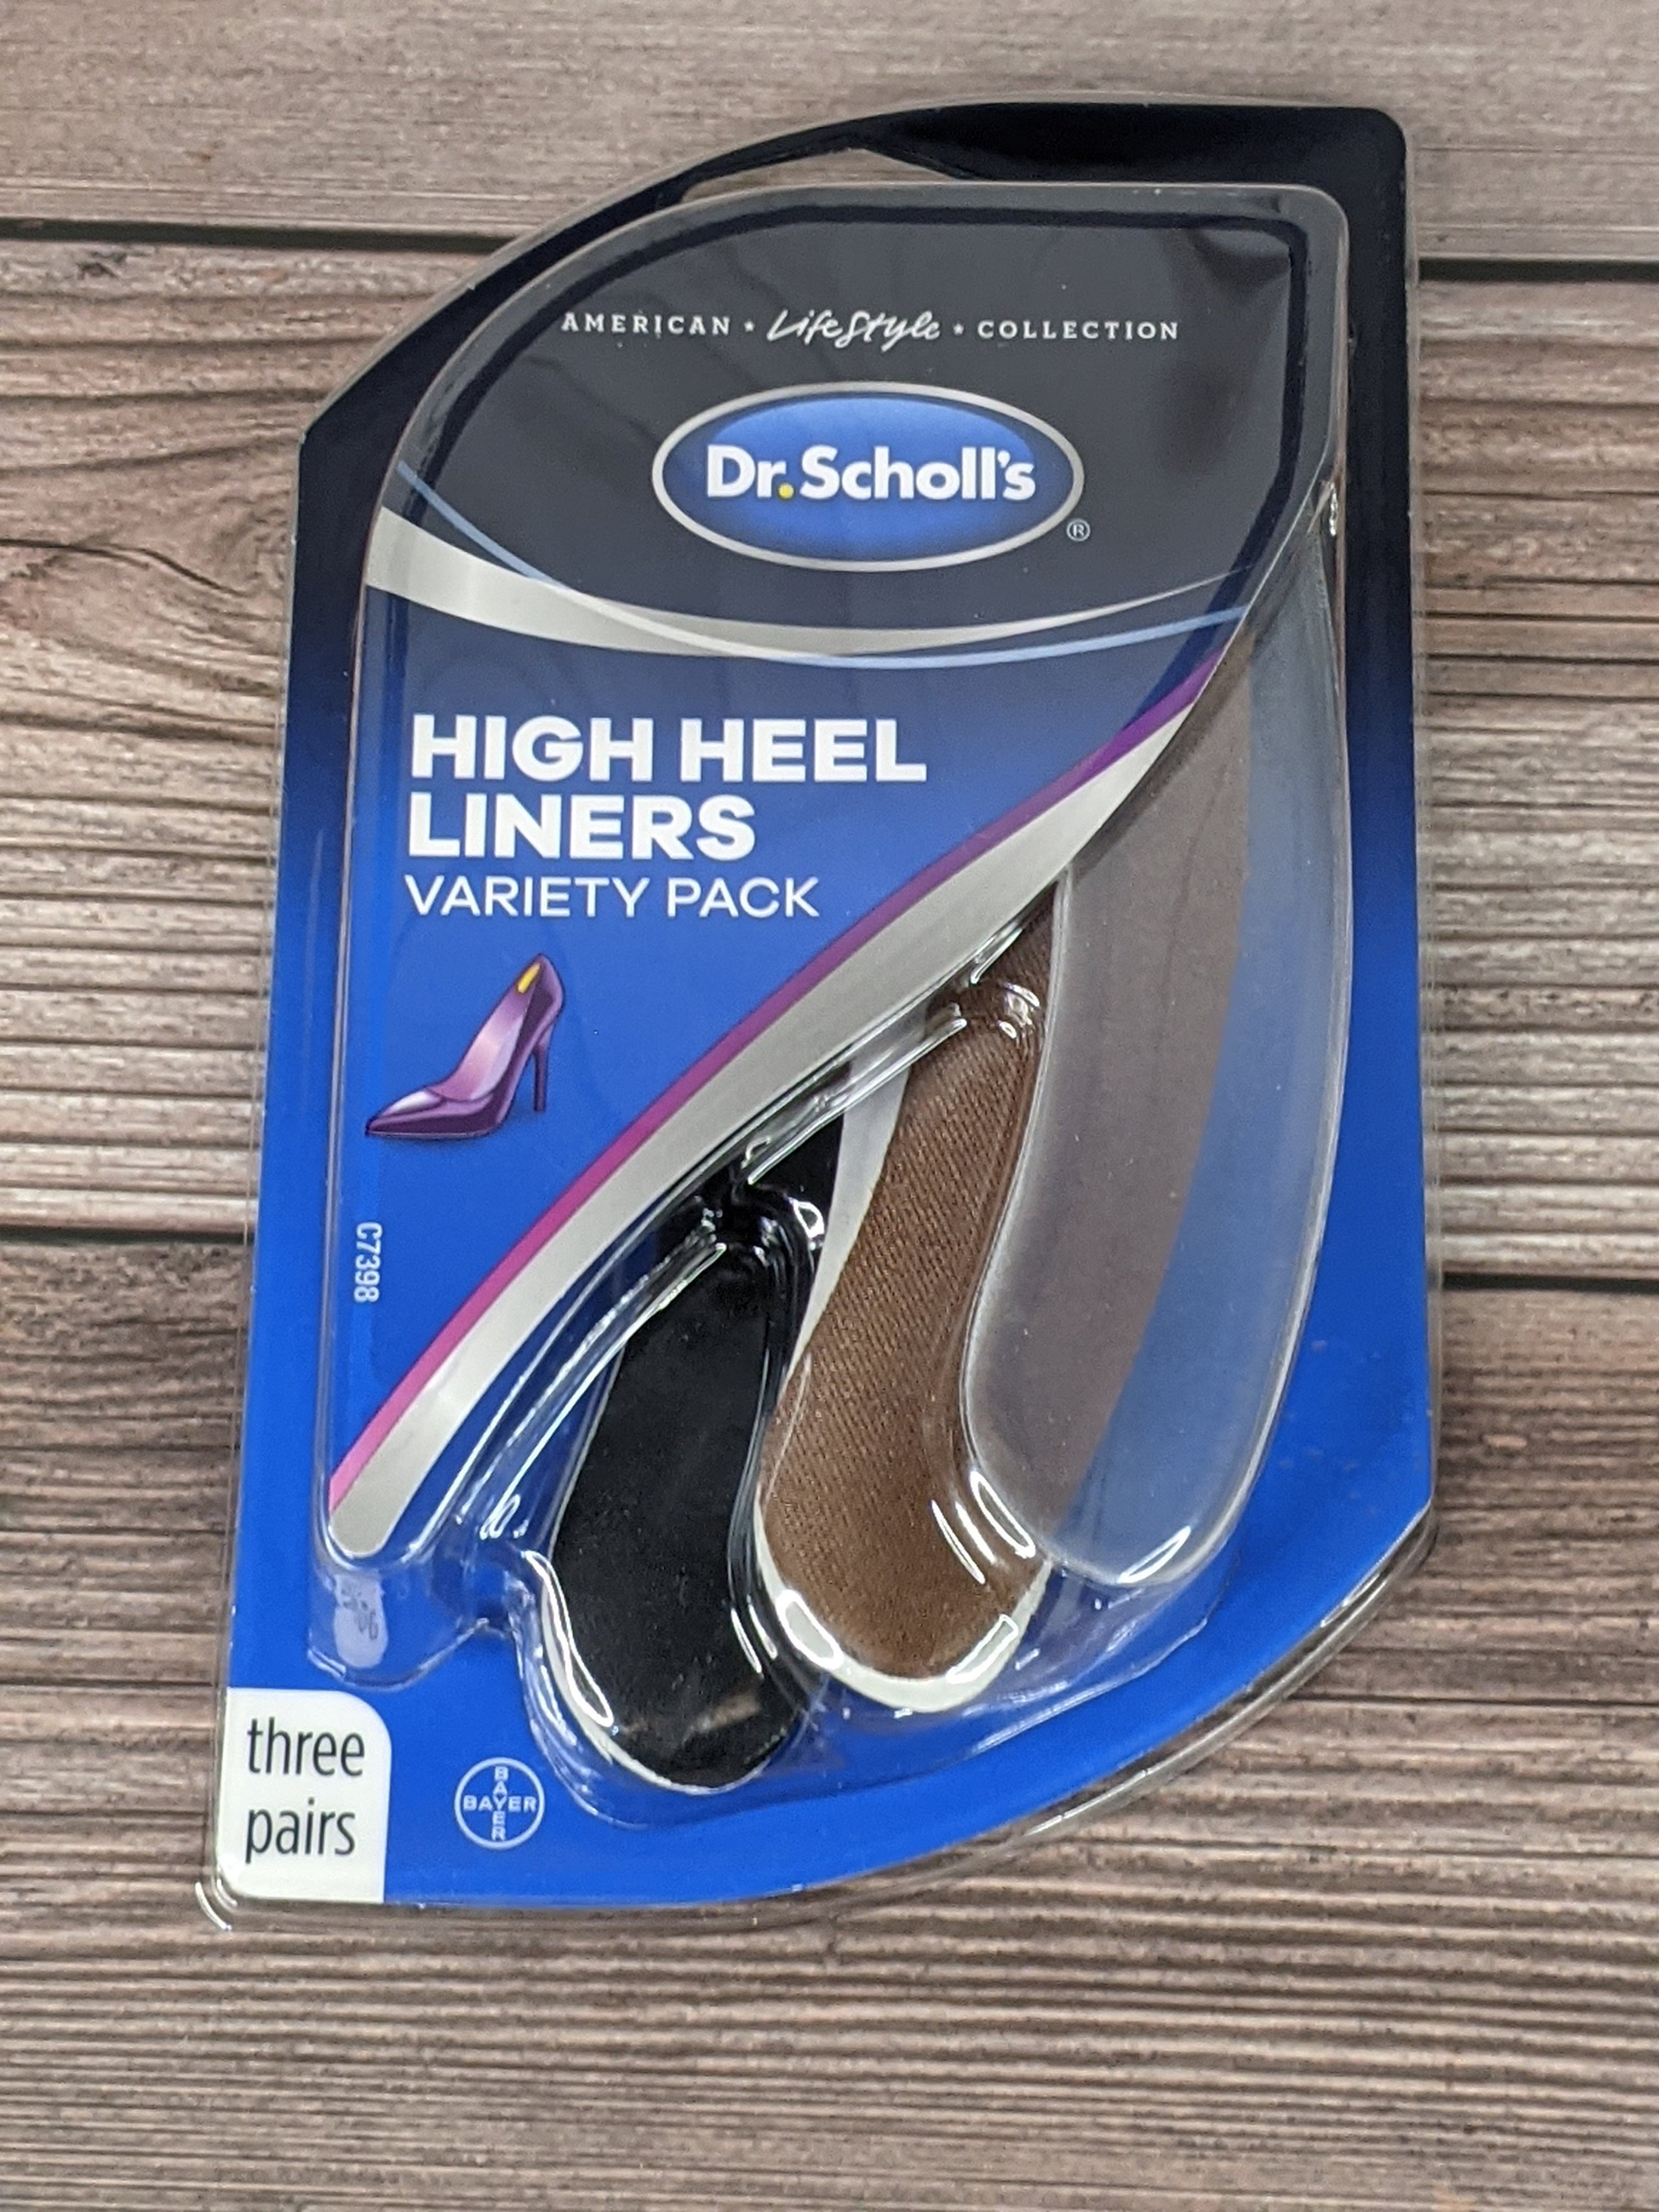 Dr. Scholl's High Heel Liners